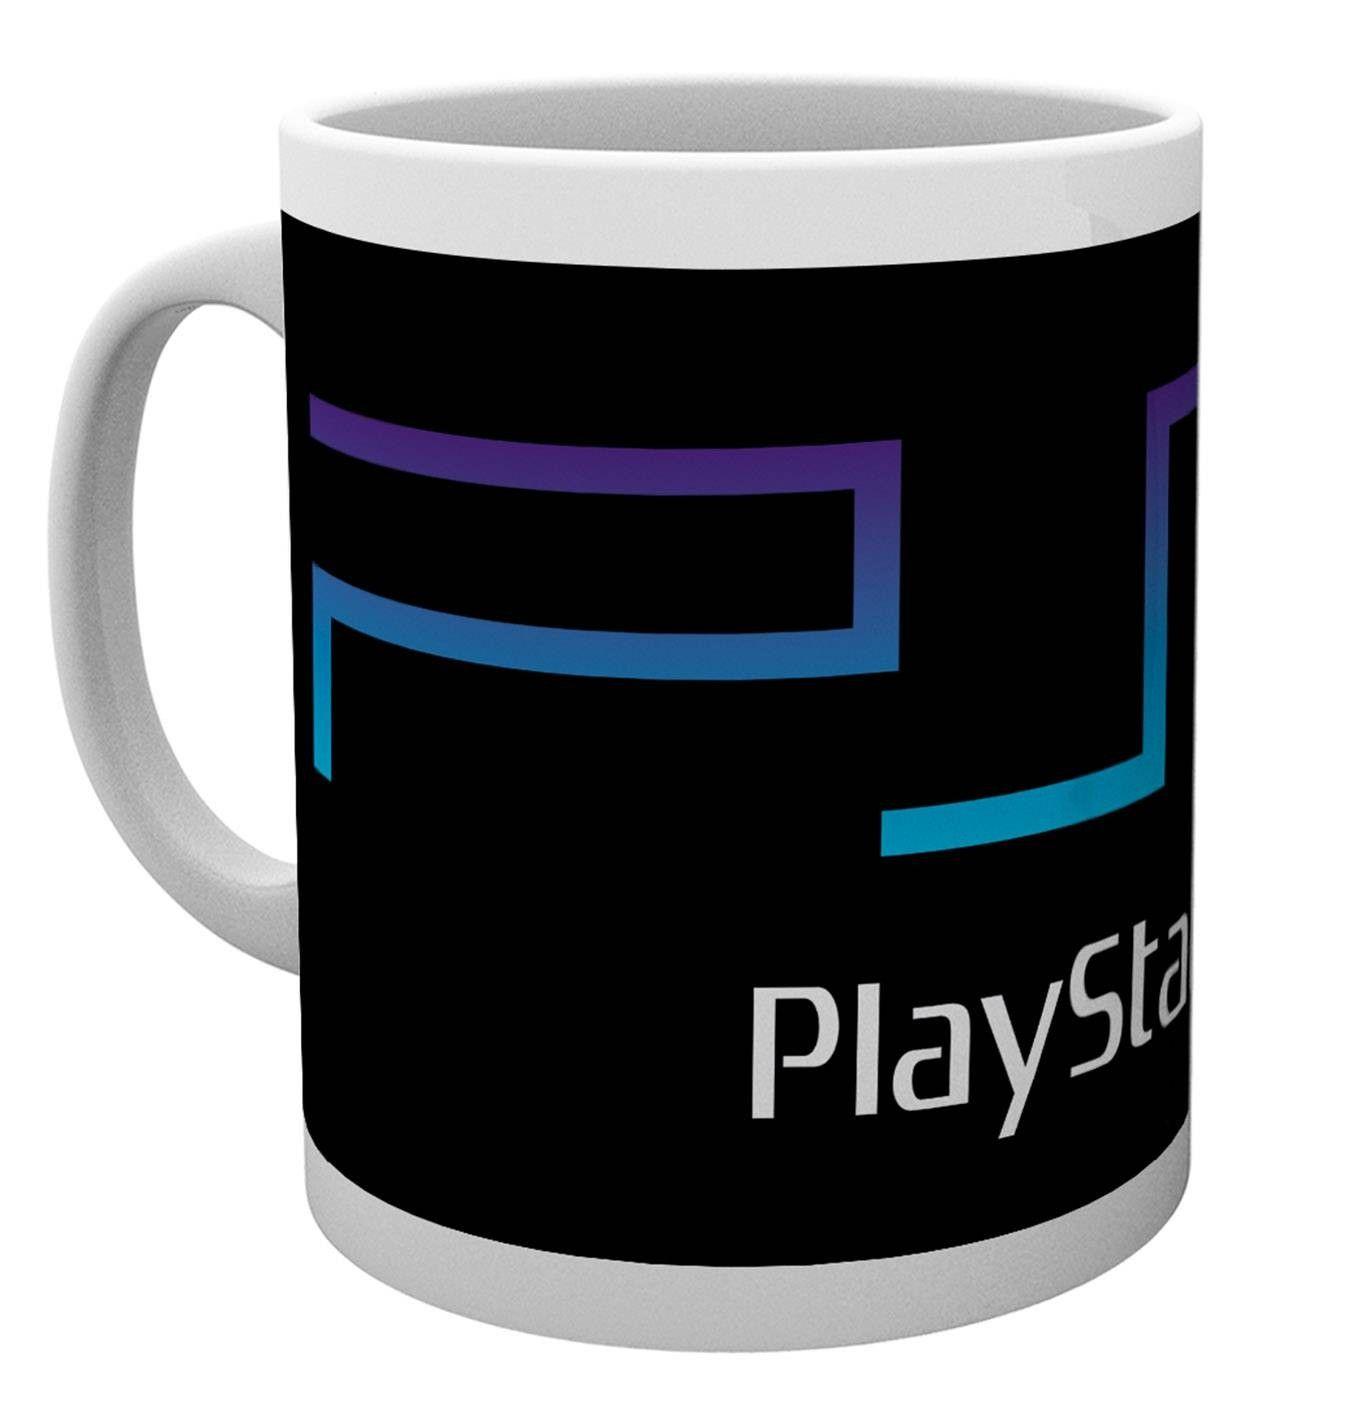 PS2 Logo - Playstation PS2 Logo Mug